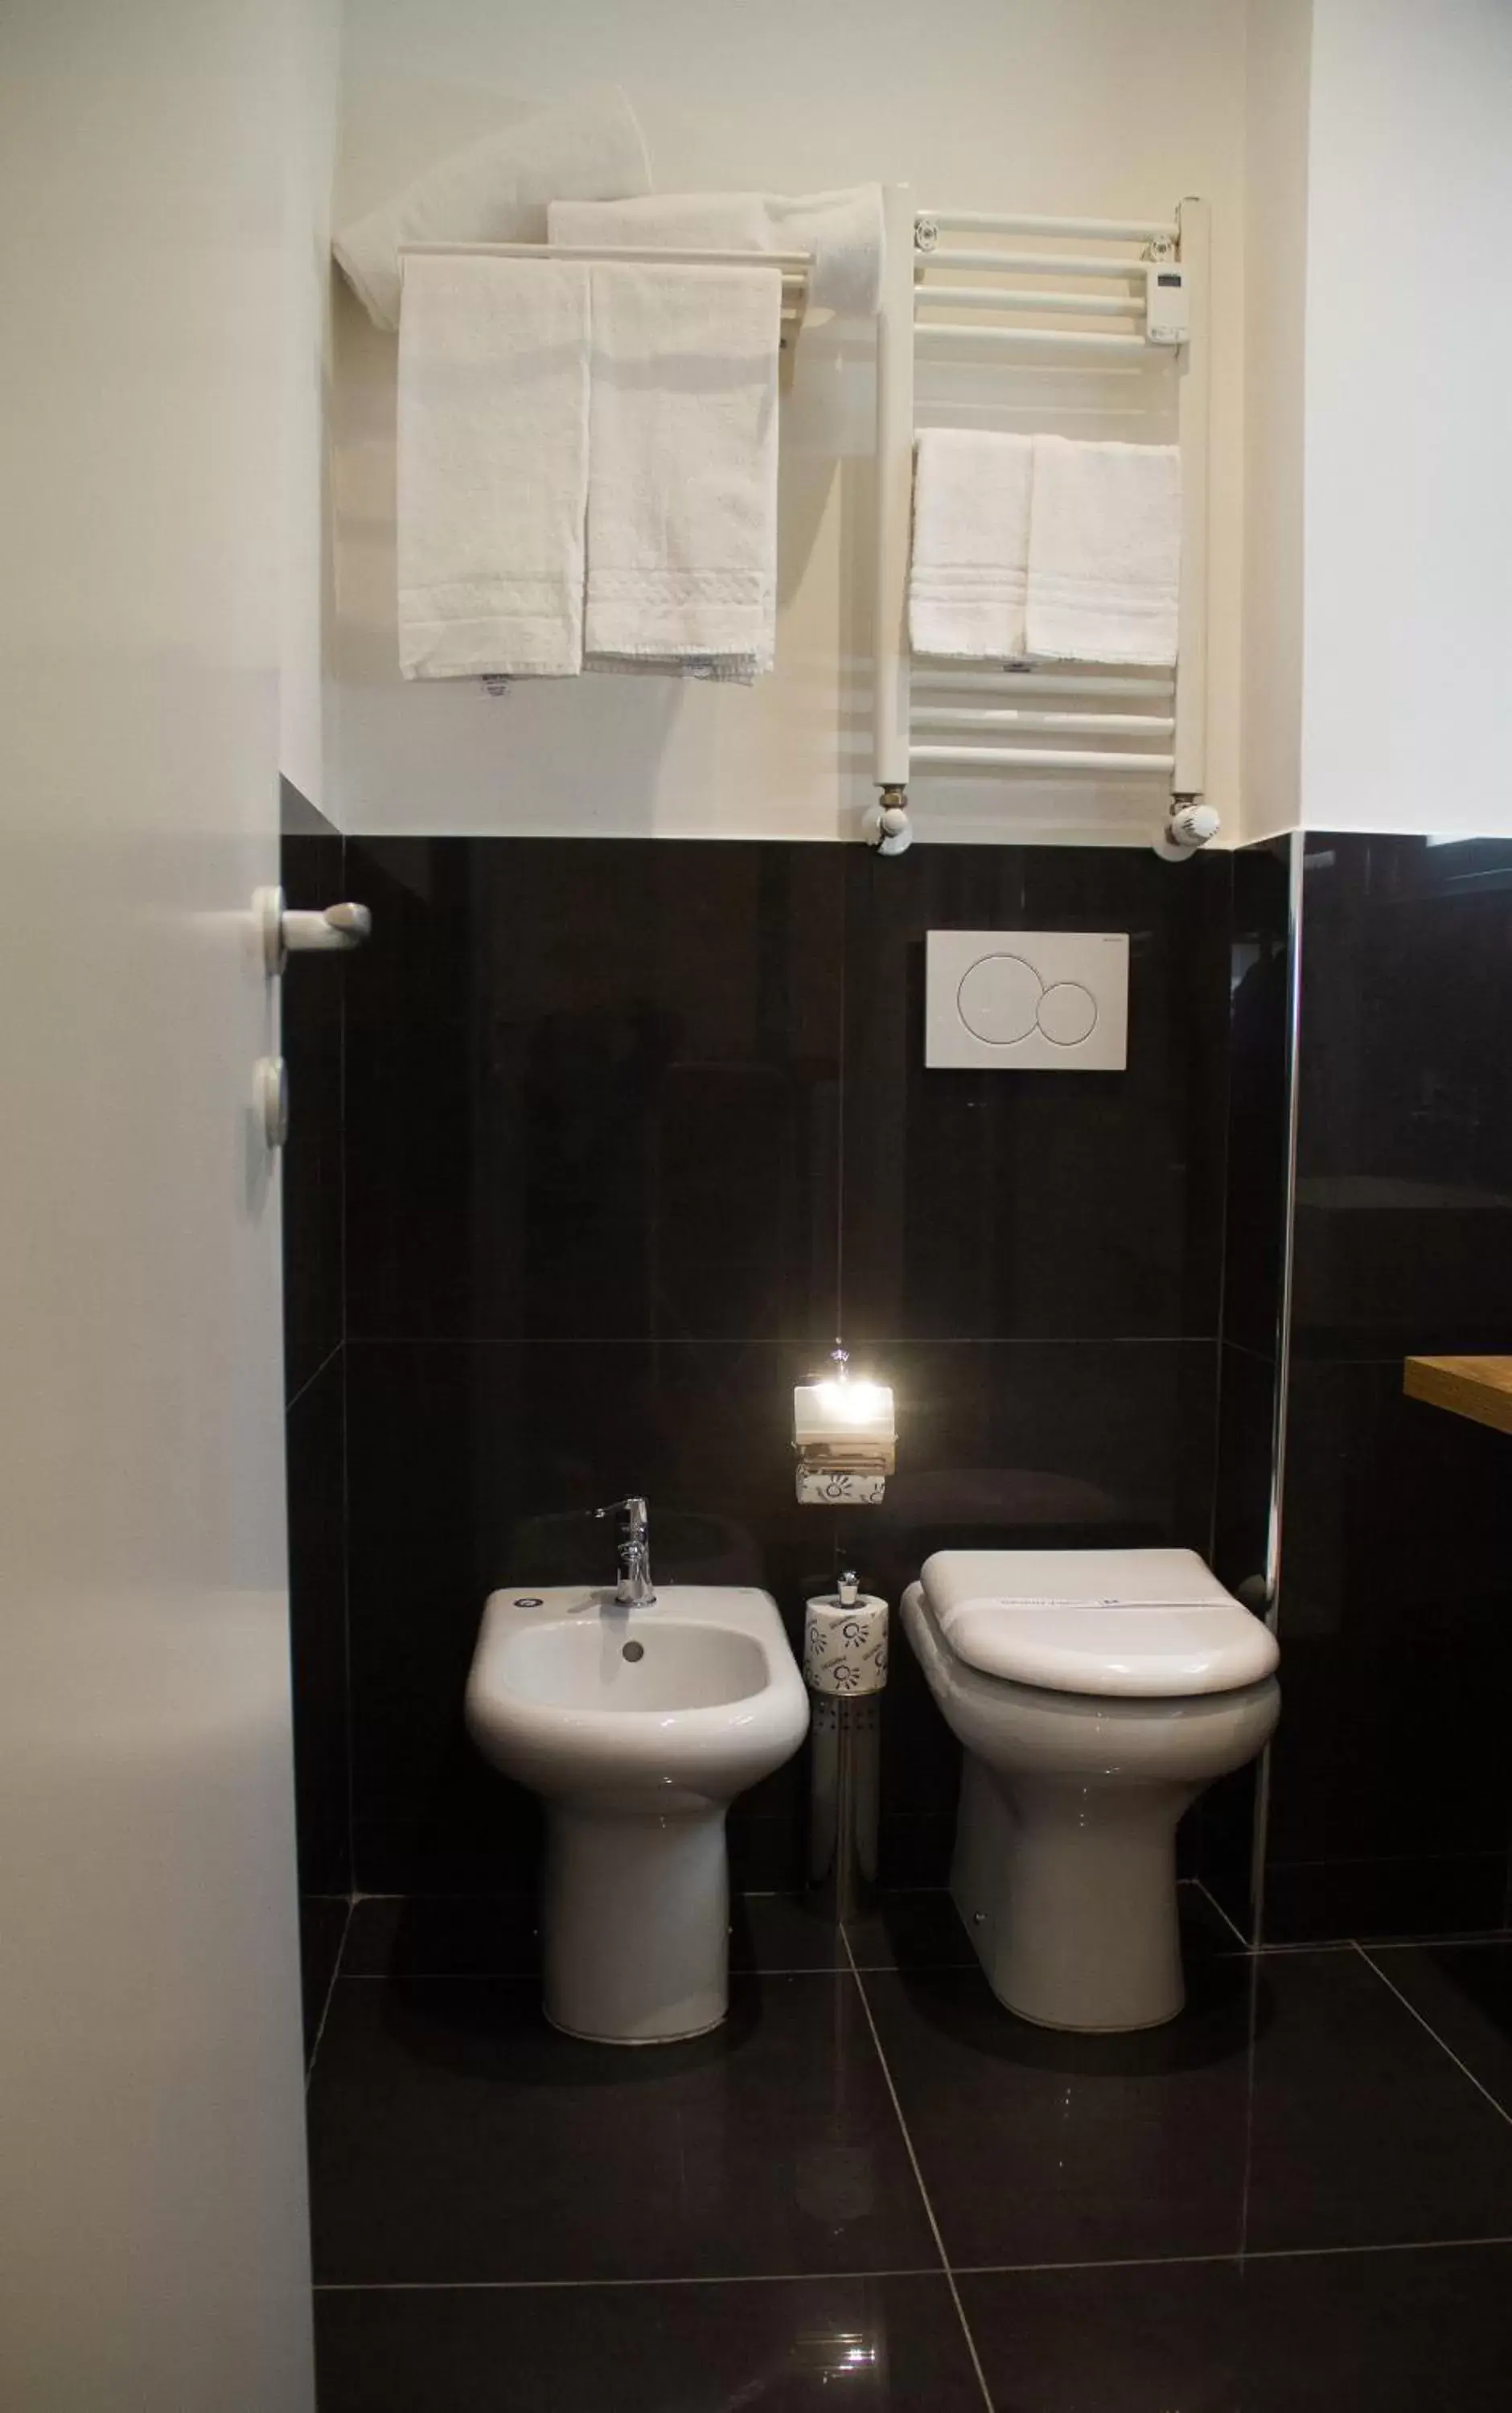 Toilet, Bathroom in Michelangelo Vatican Rooms